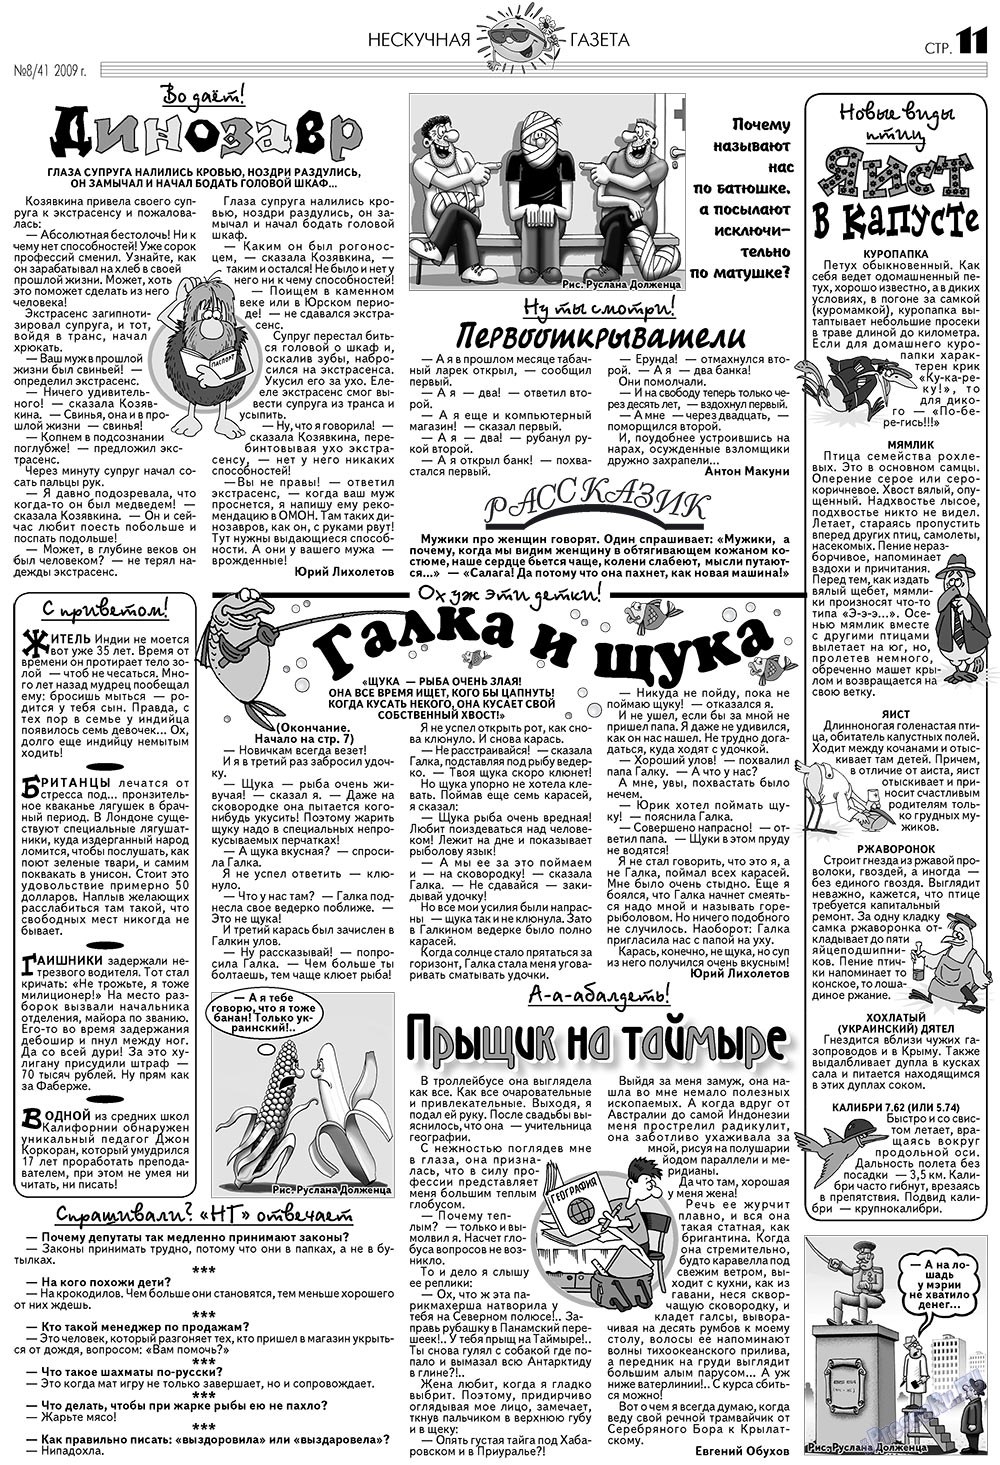 Нескучная газета (журнал). 2009 год, номер 8, стр. 11